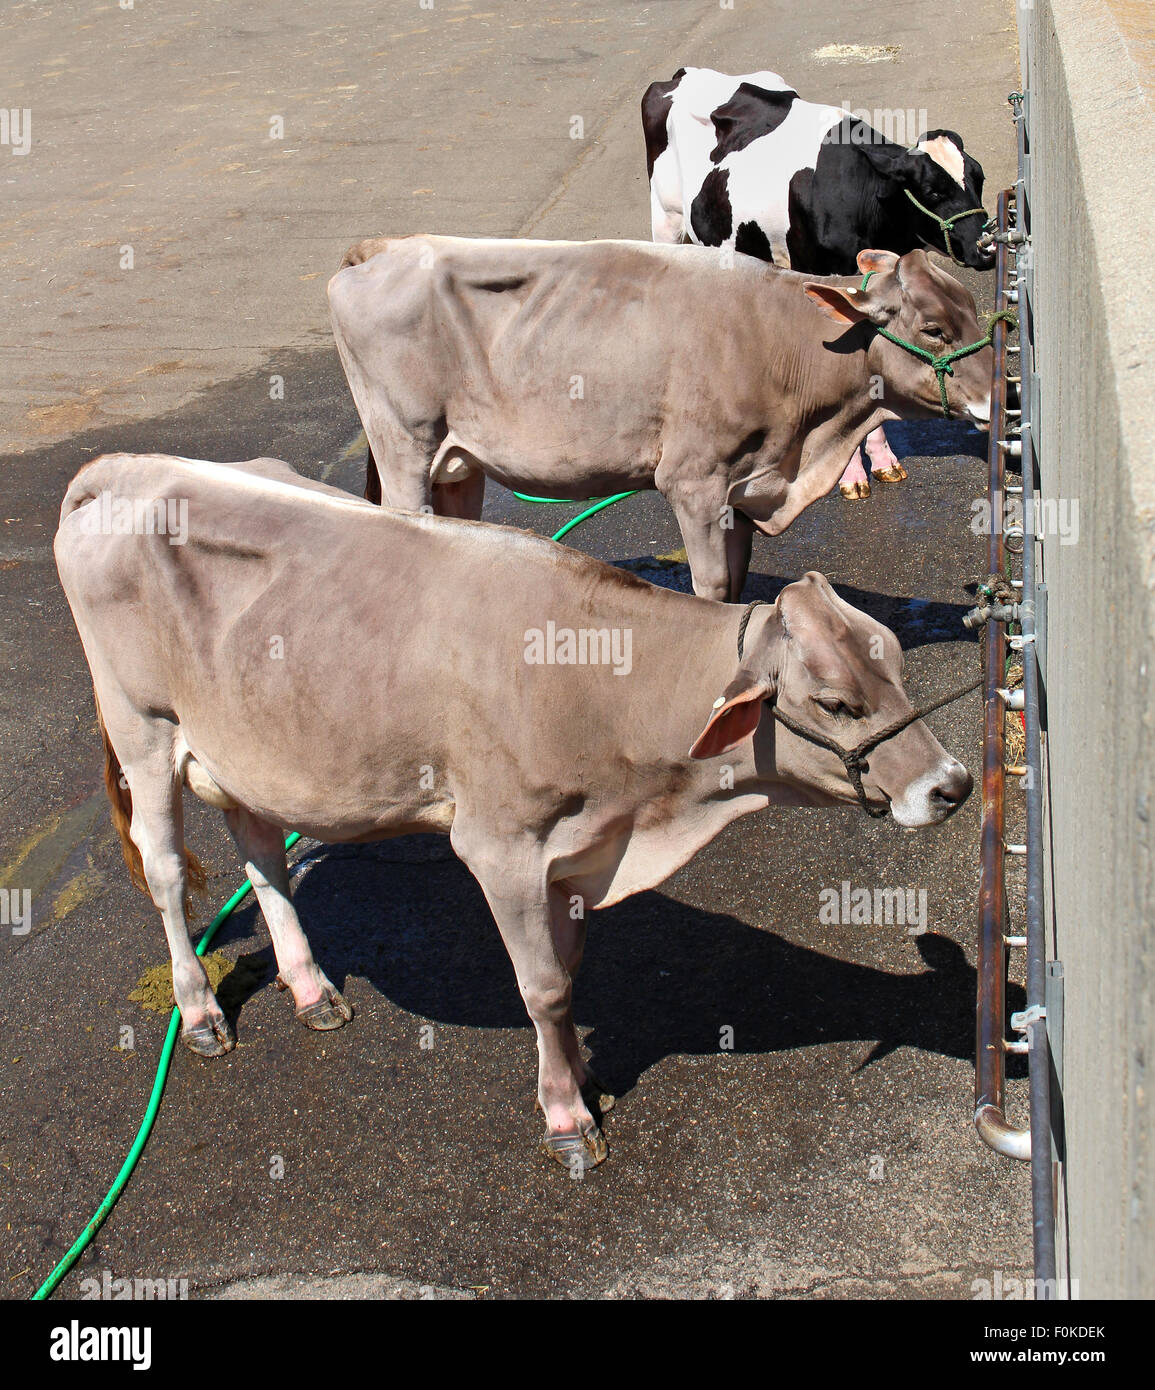 Trois vaches confinées Banque D'Images